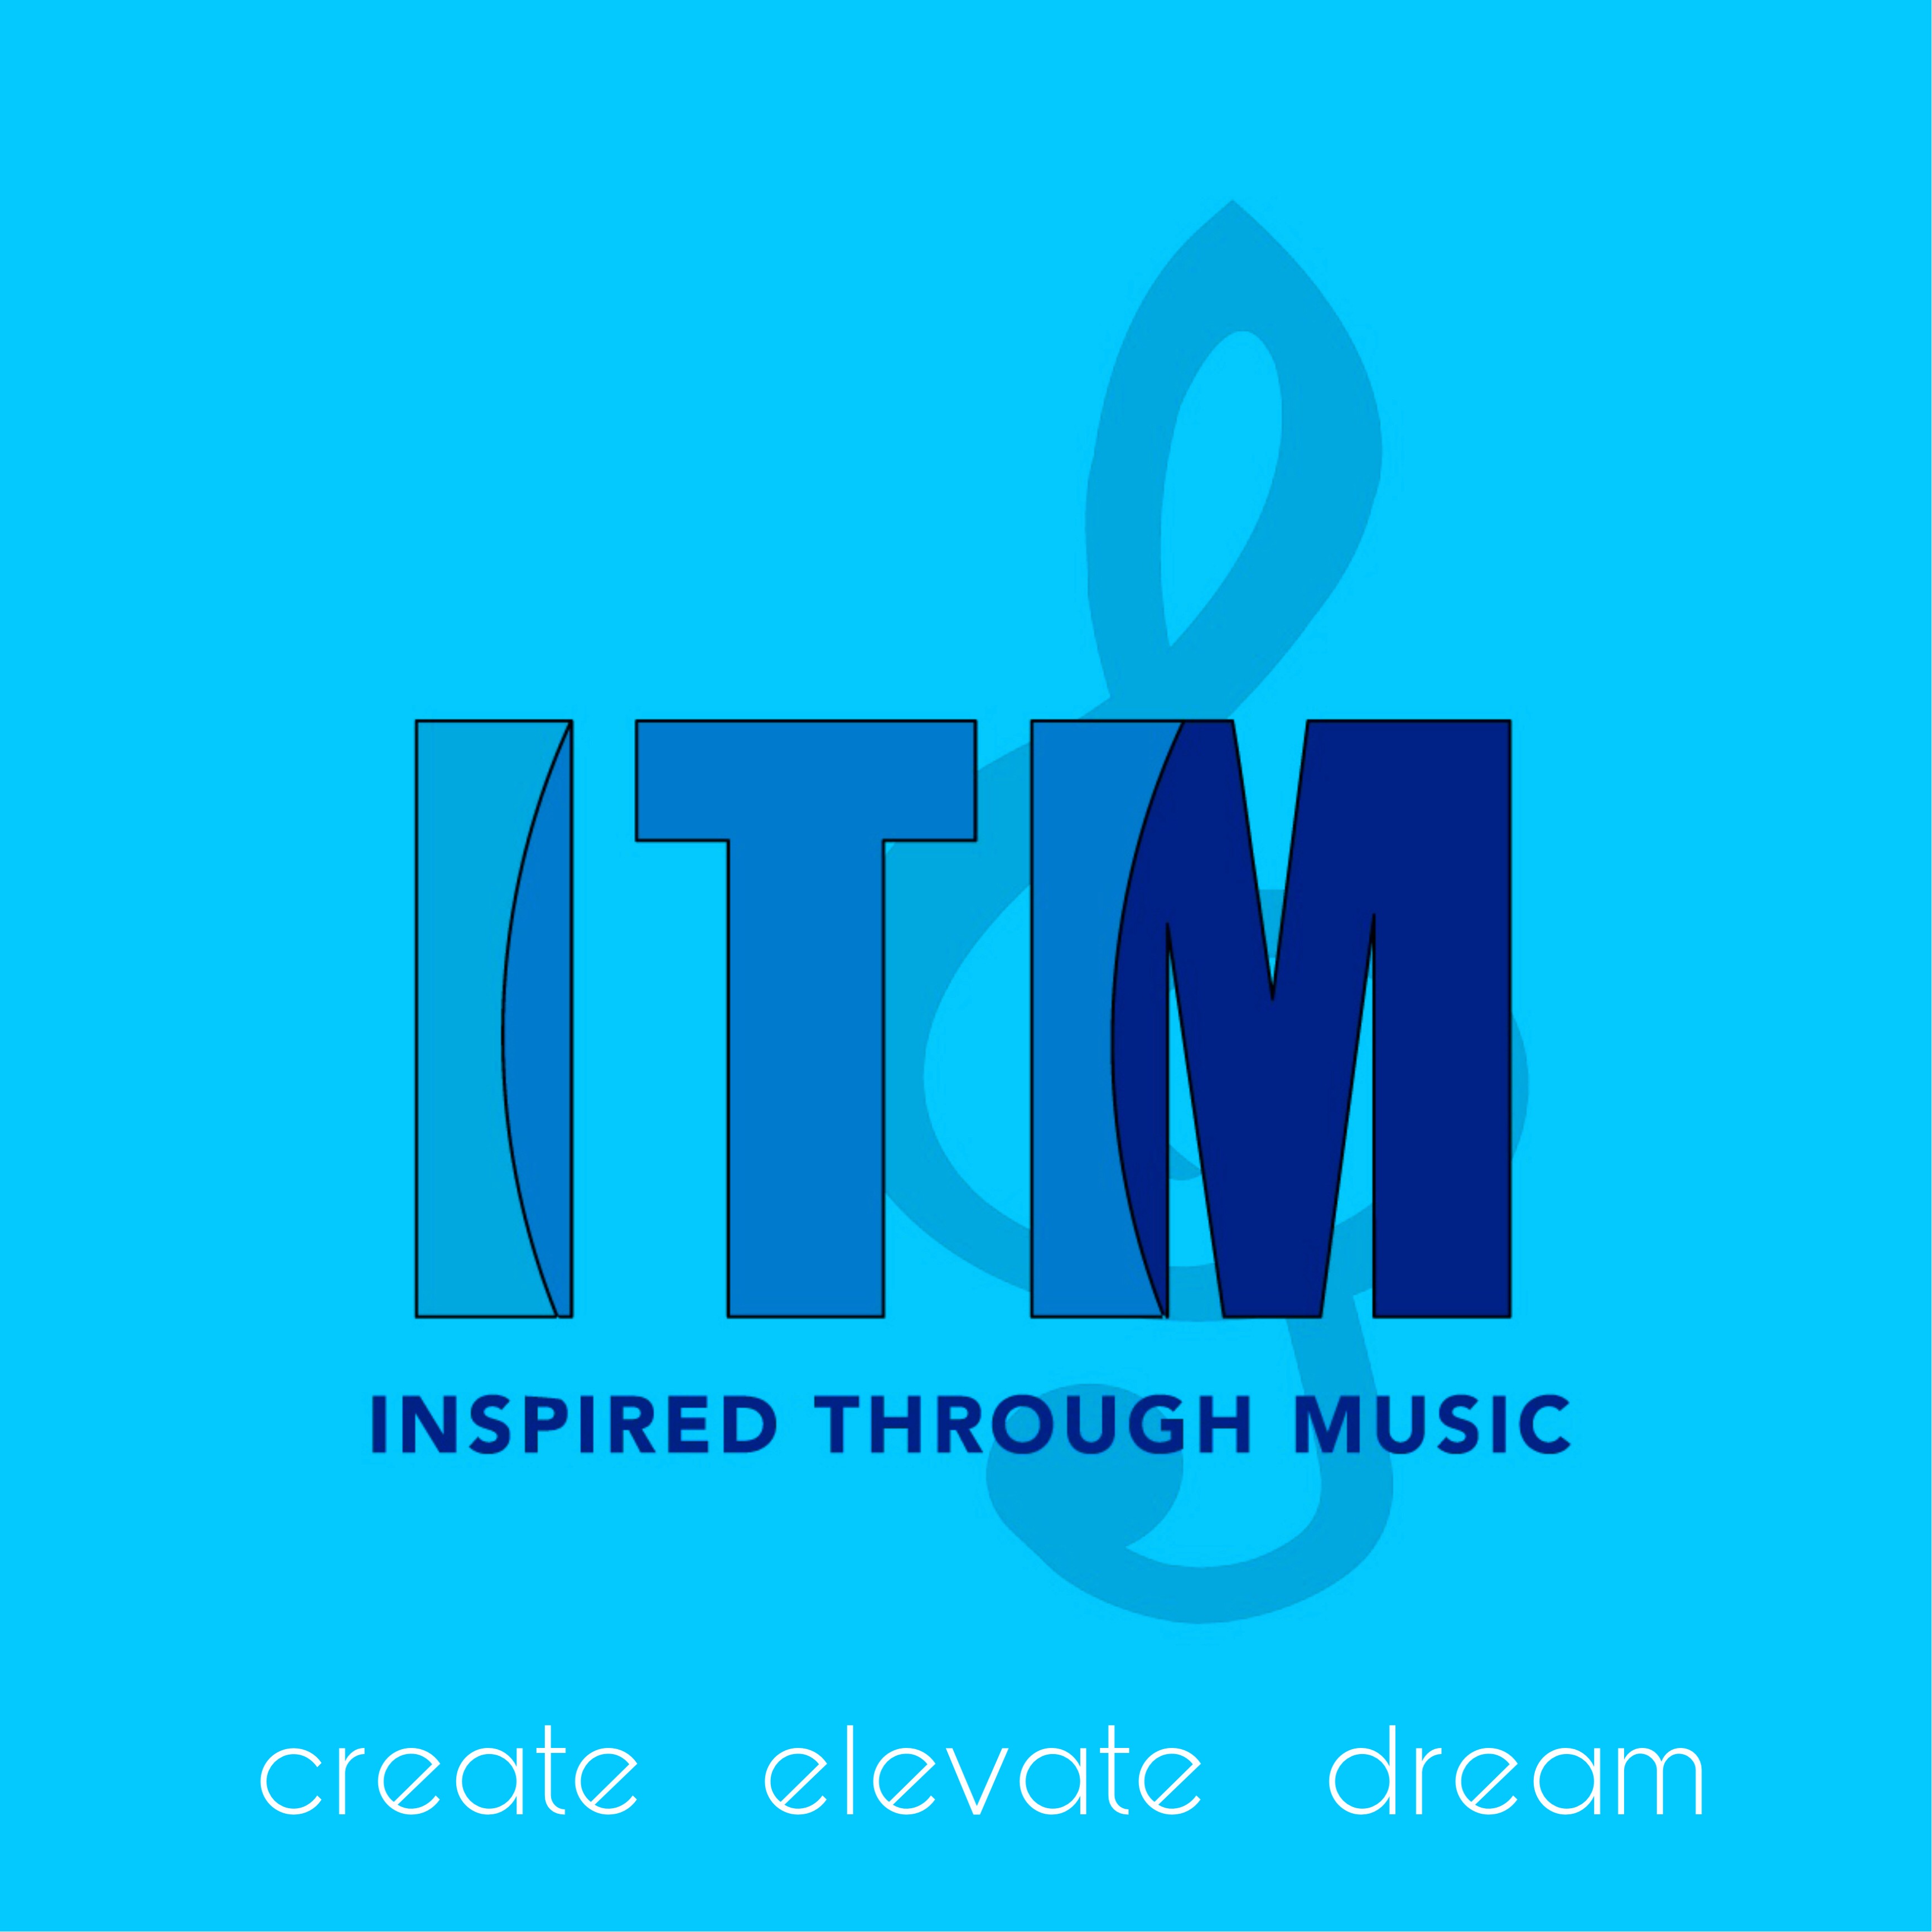 Inspired Through Music - create, elevate, dream